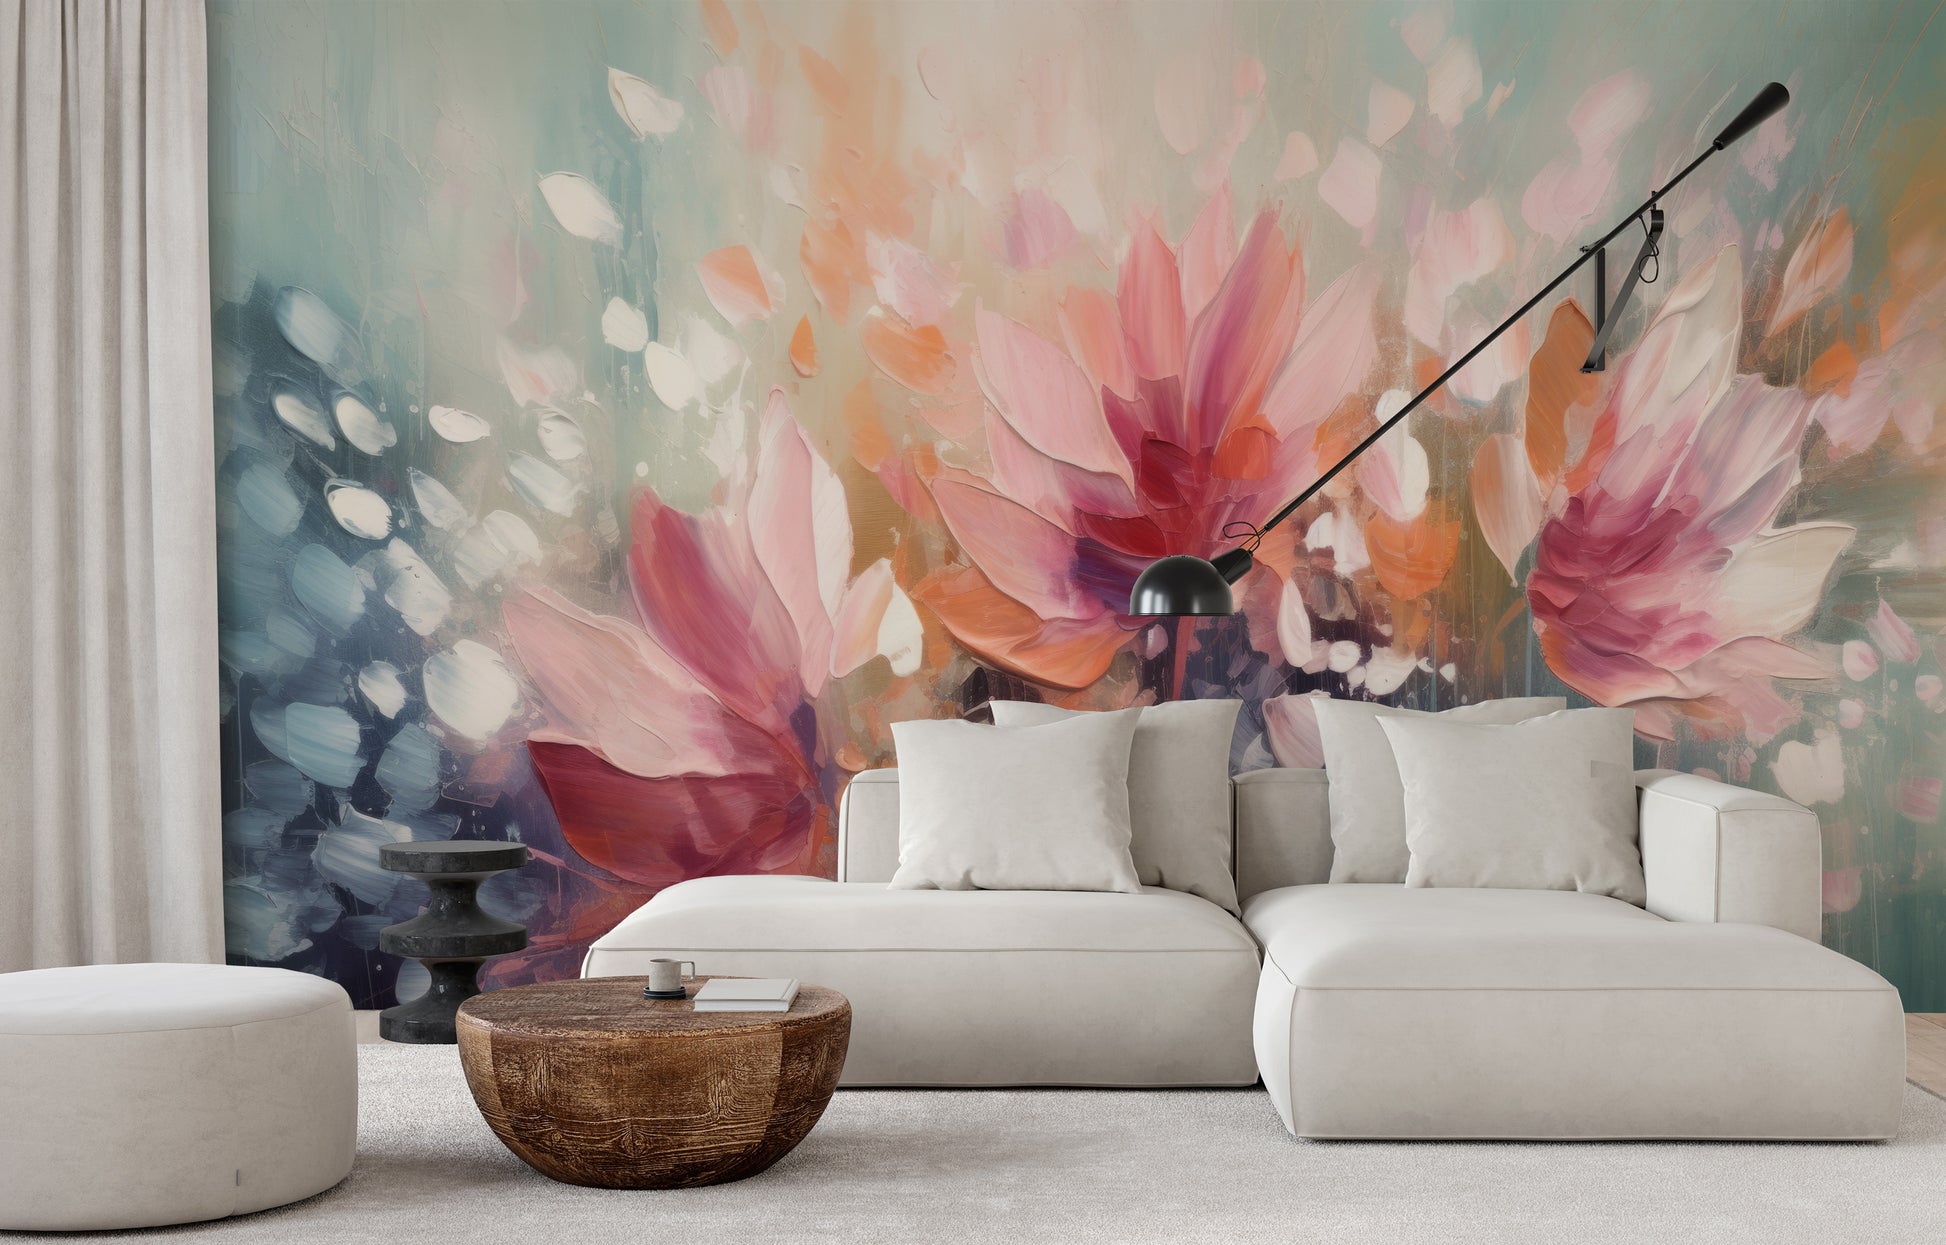 Wzór fototapety o nazwie Dreamy Floral Abstraction pokazanej w kontekście pomieszczenia.